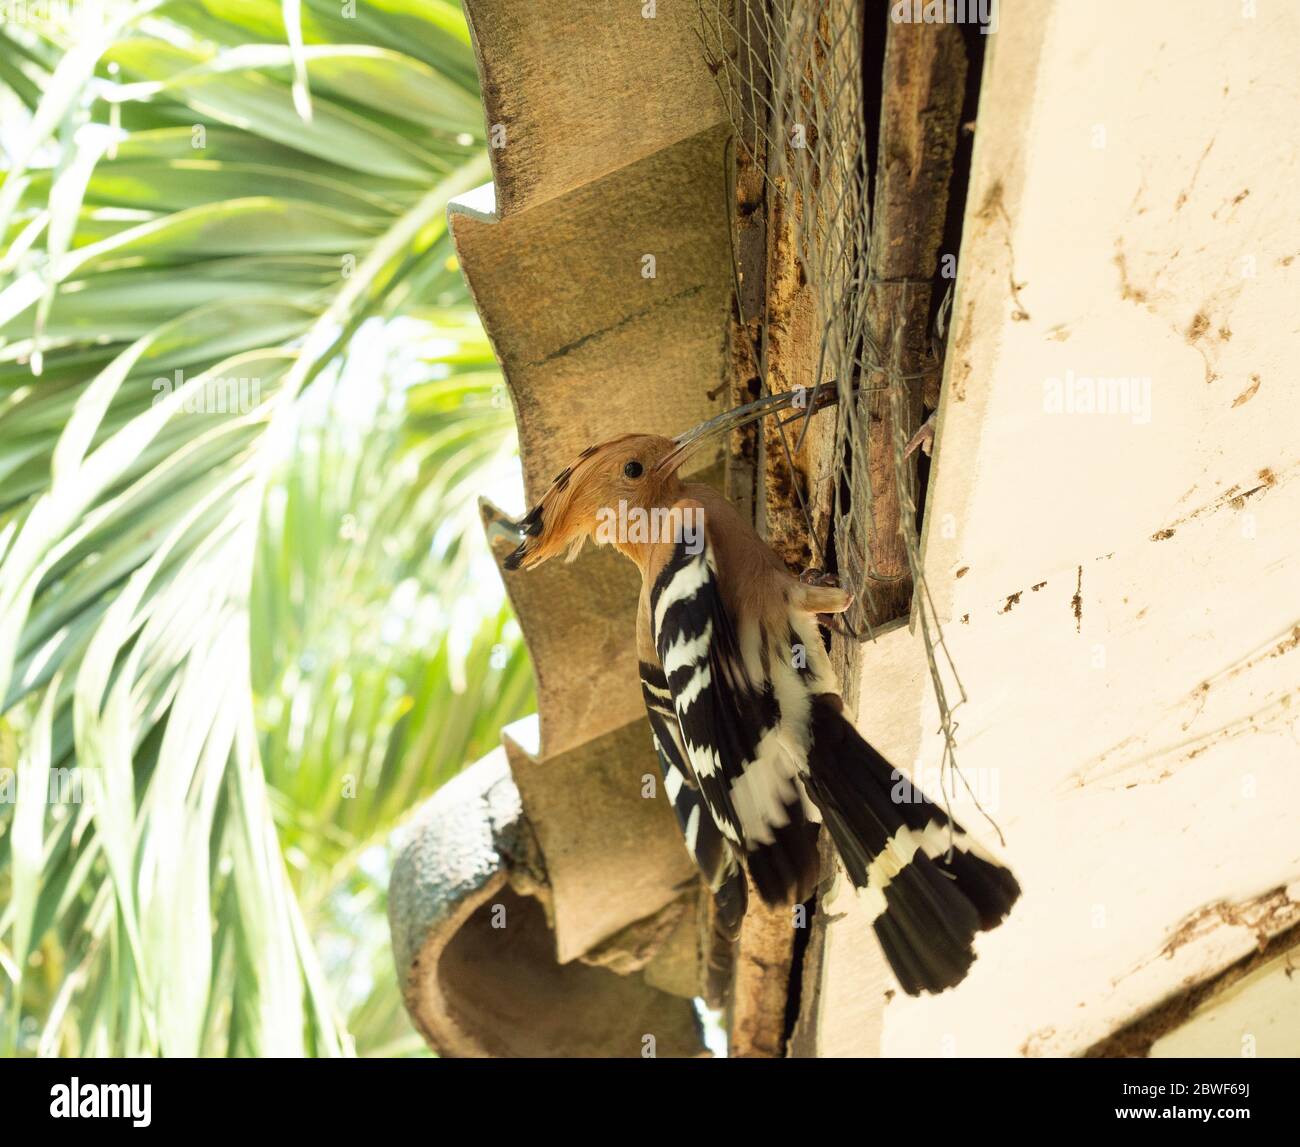 Insecte de péchage d'oiseau mâle pour l'oiseau femelle à manger dans le nid, se nourrissant dans la nature, la cachette de la faune dans la société humaine, l'oiseau eurasien d'Hoopoe Banque D'Images